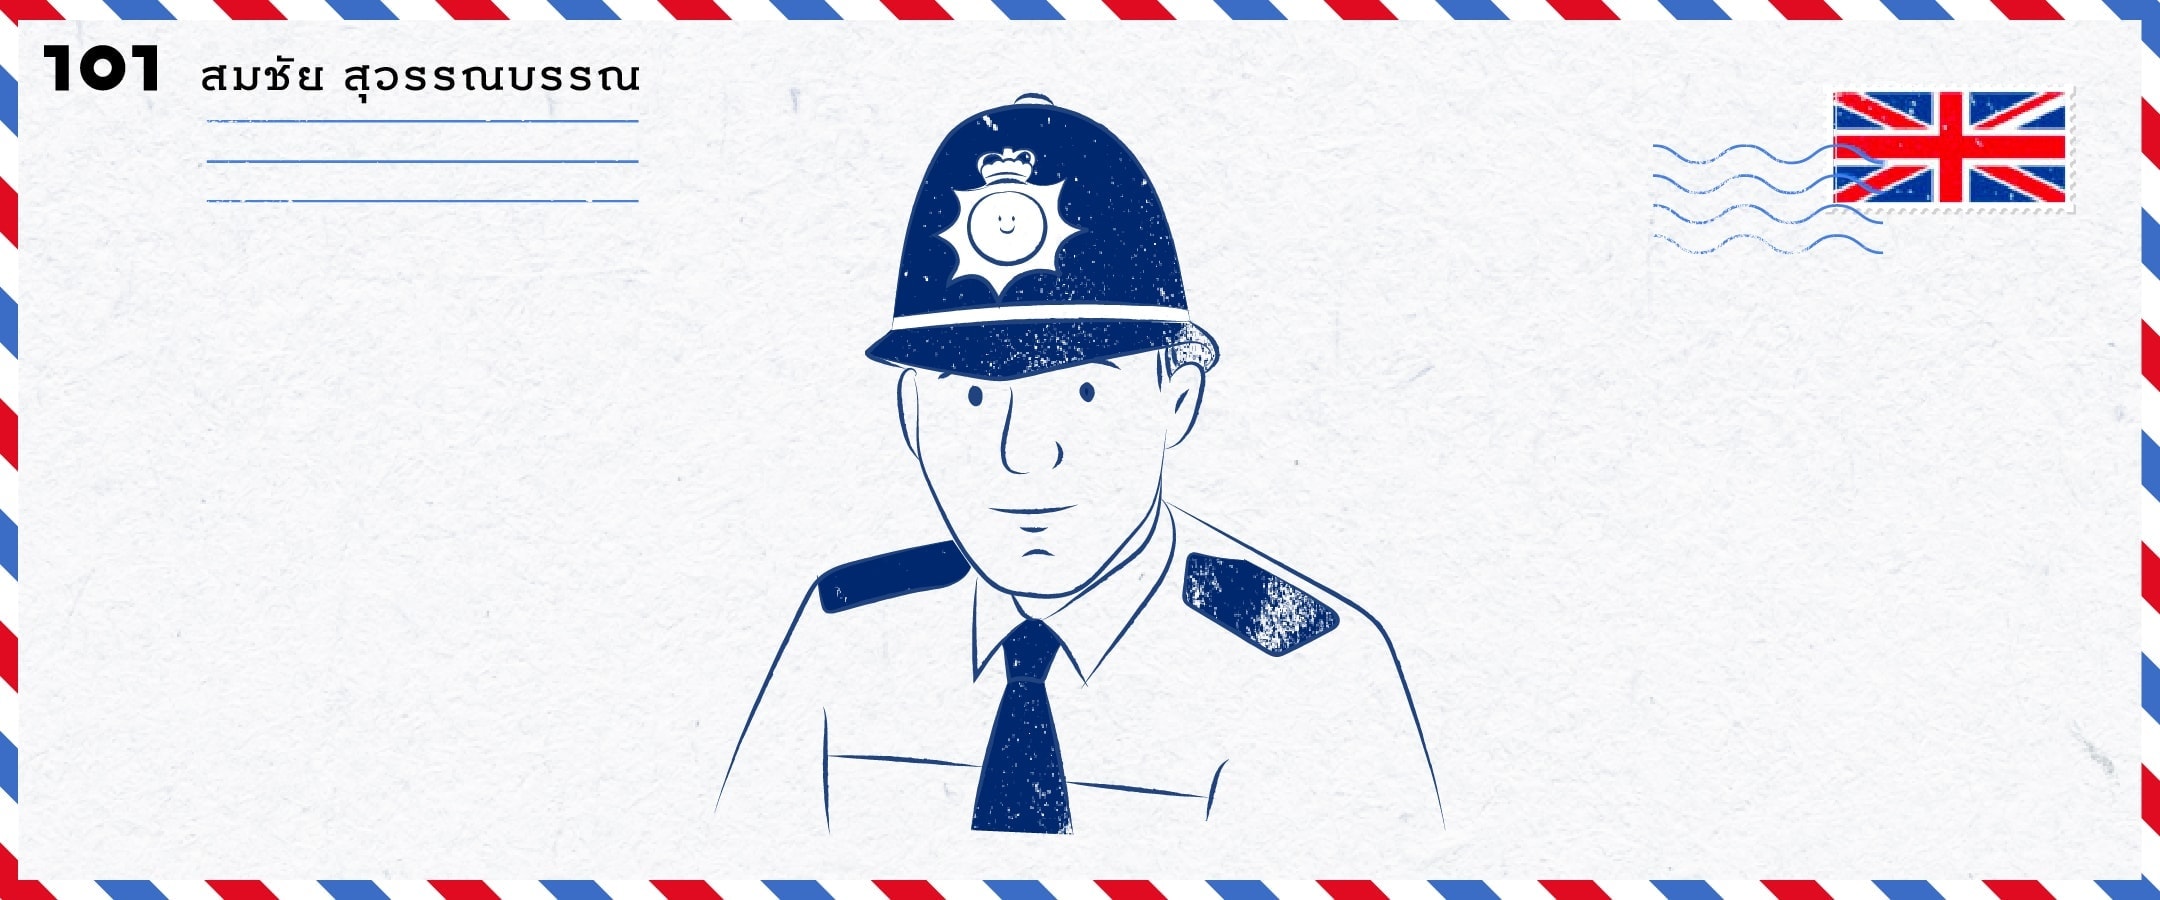 ทำไมตำรวจอังกฤษจึงเป็นมิตรกับประชาชน